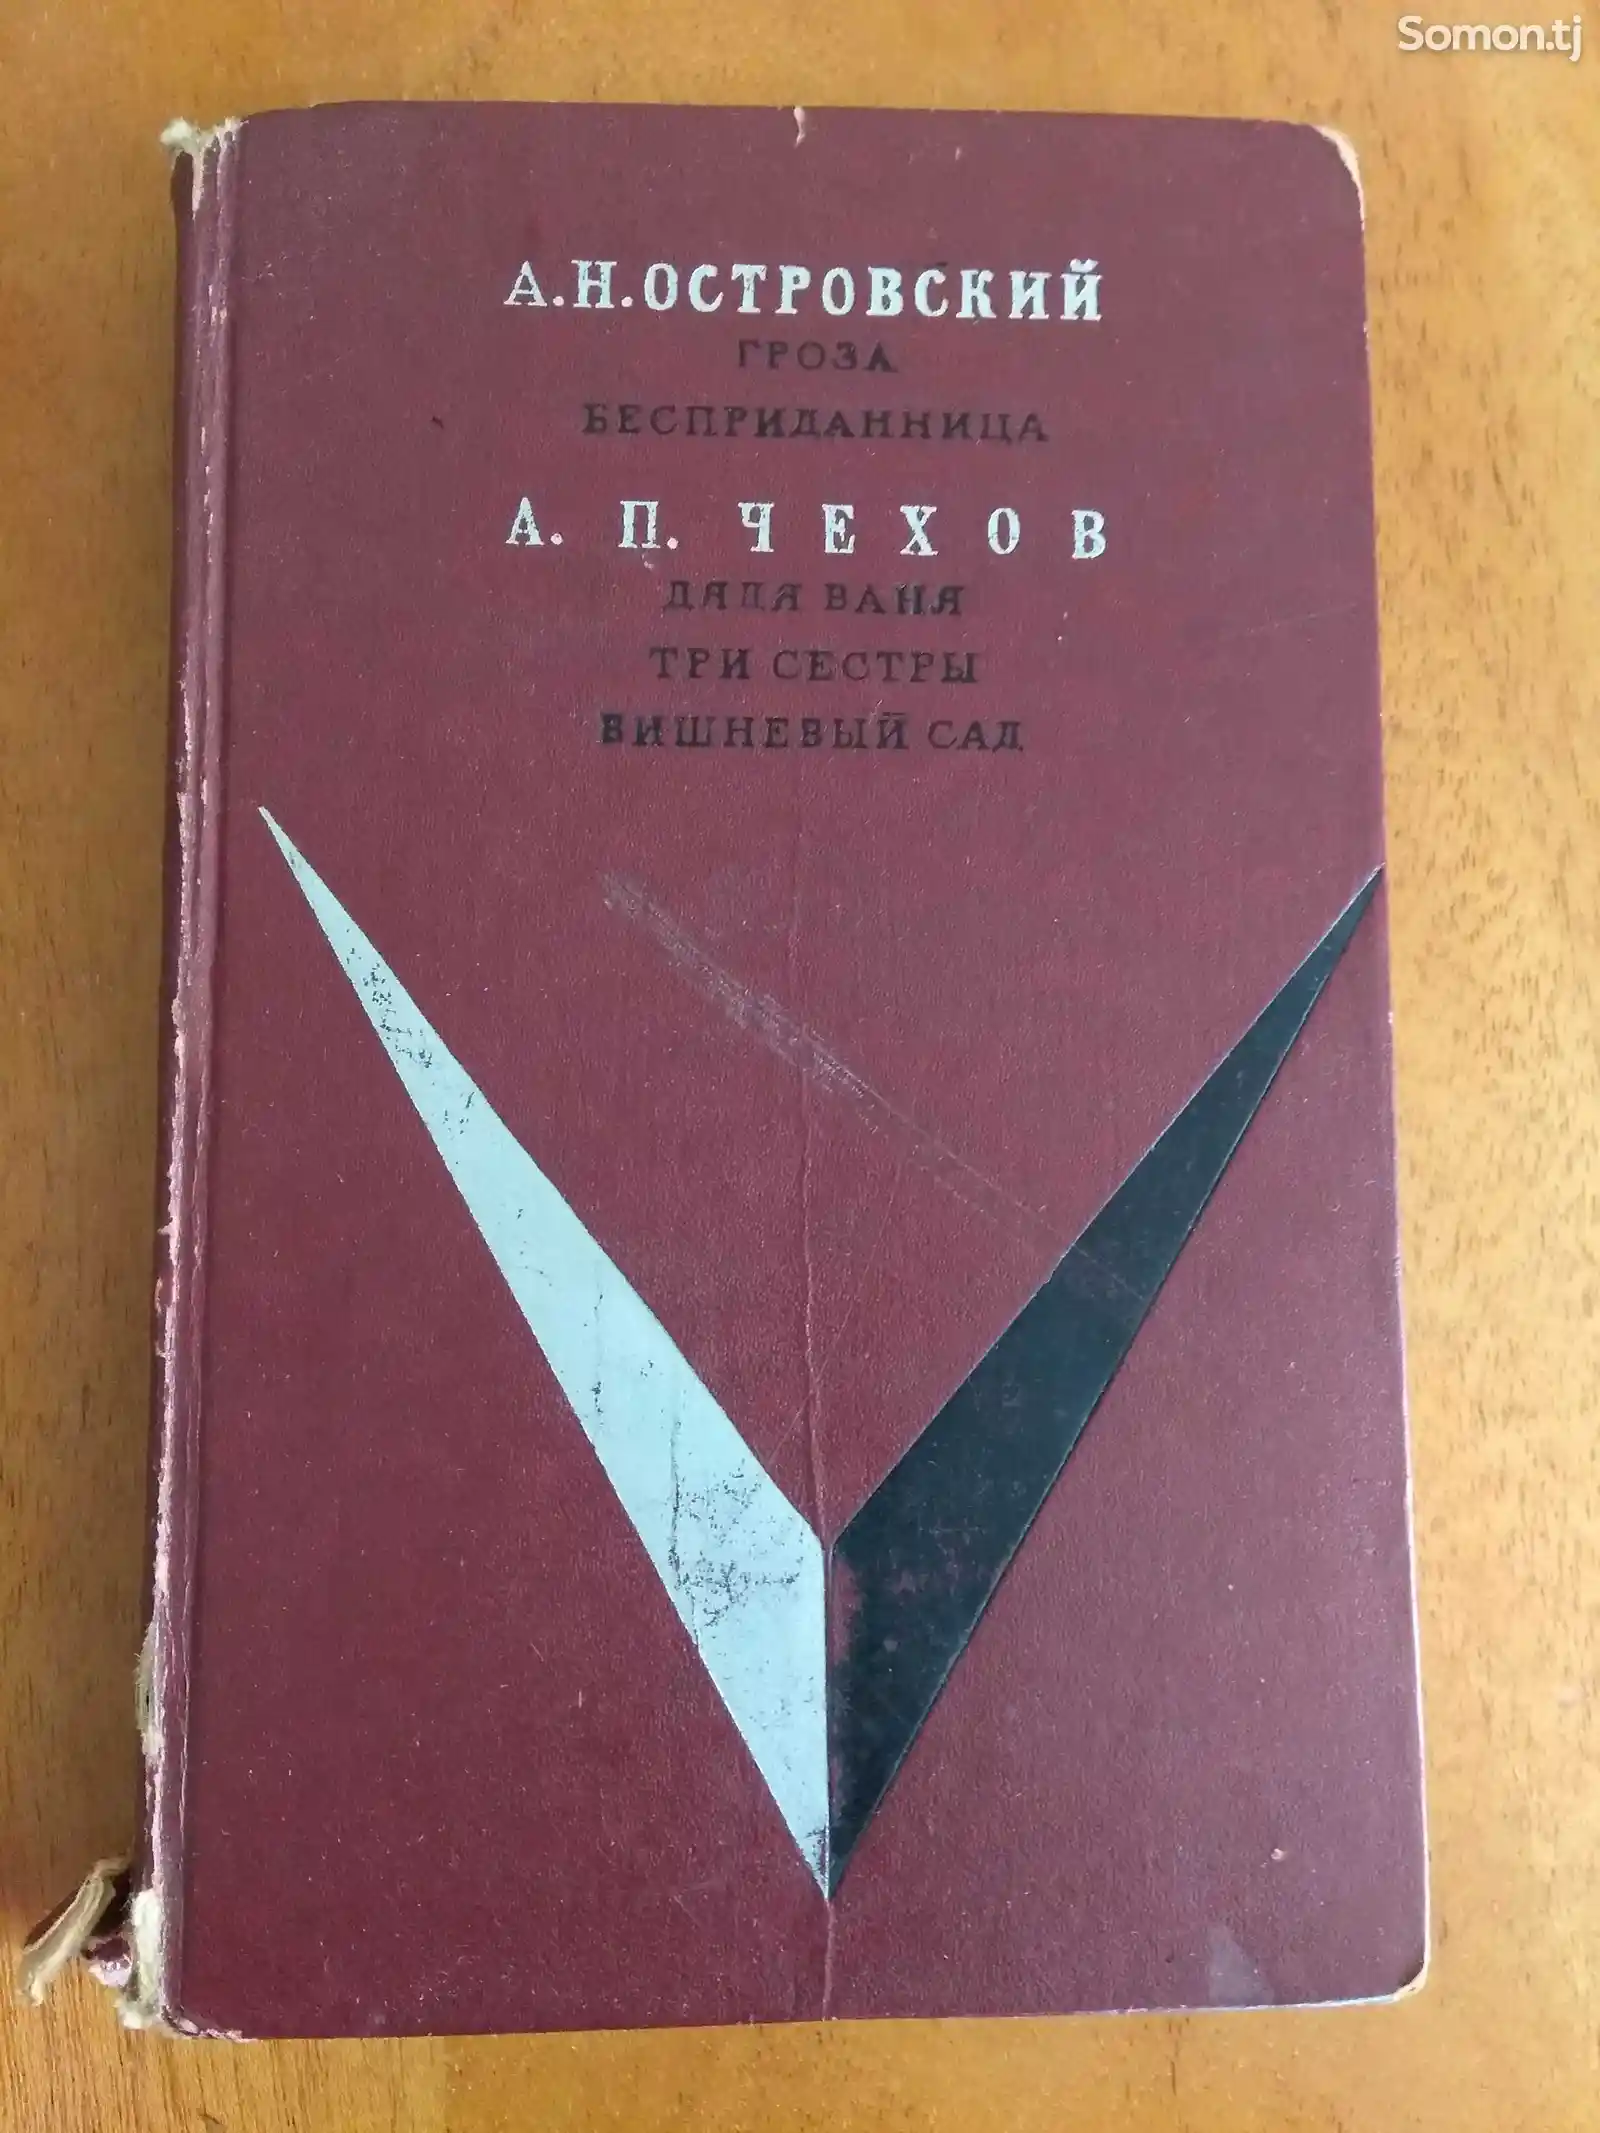 Книга А.Н. Островский и А.П. Чехов-1